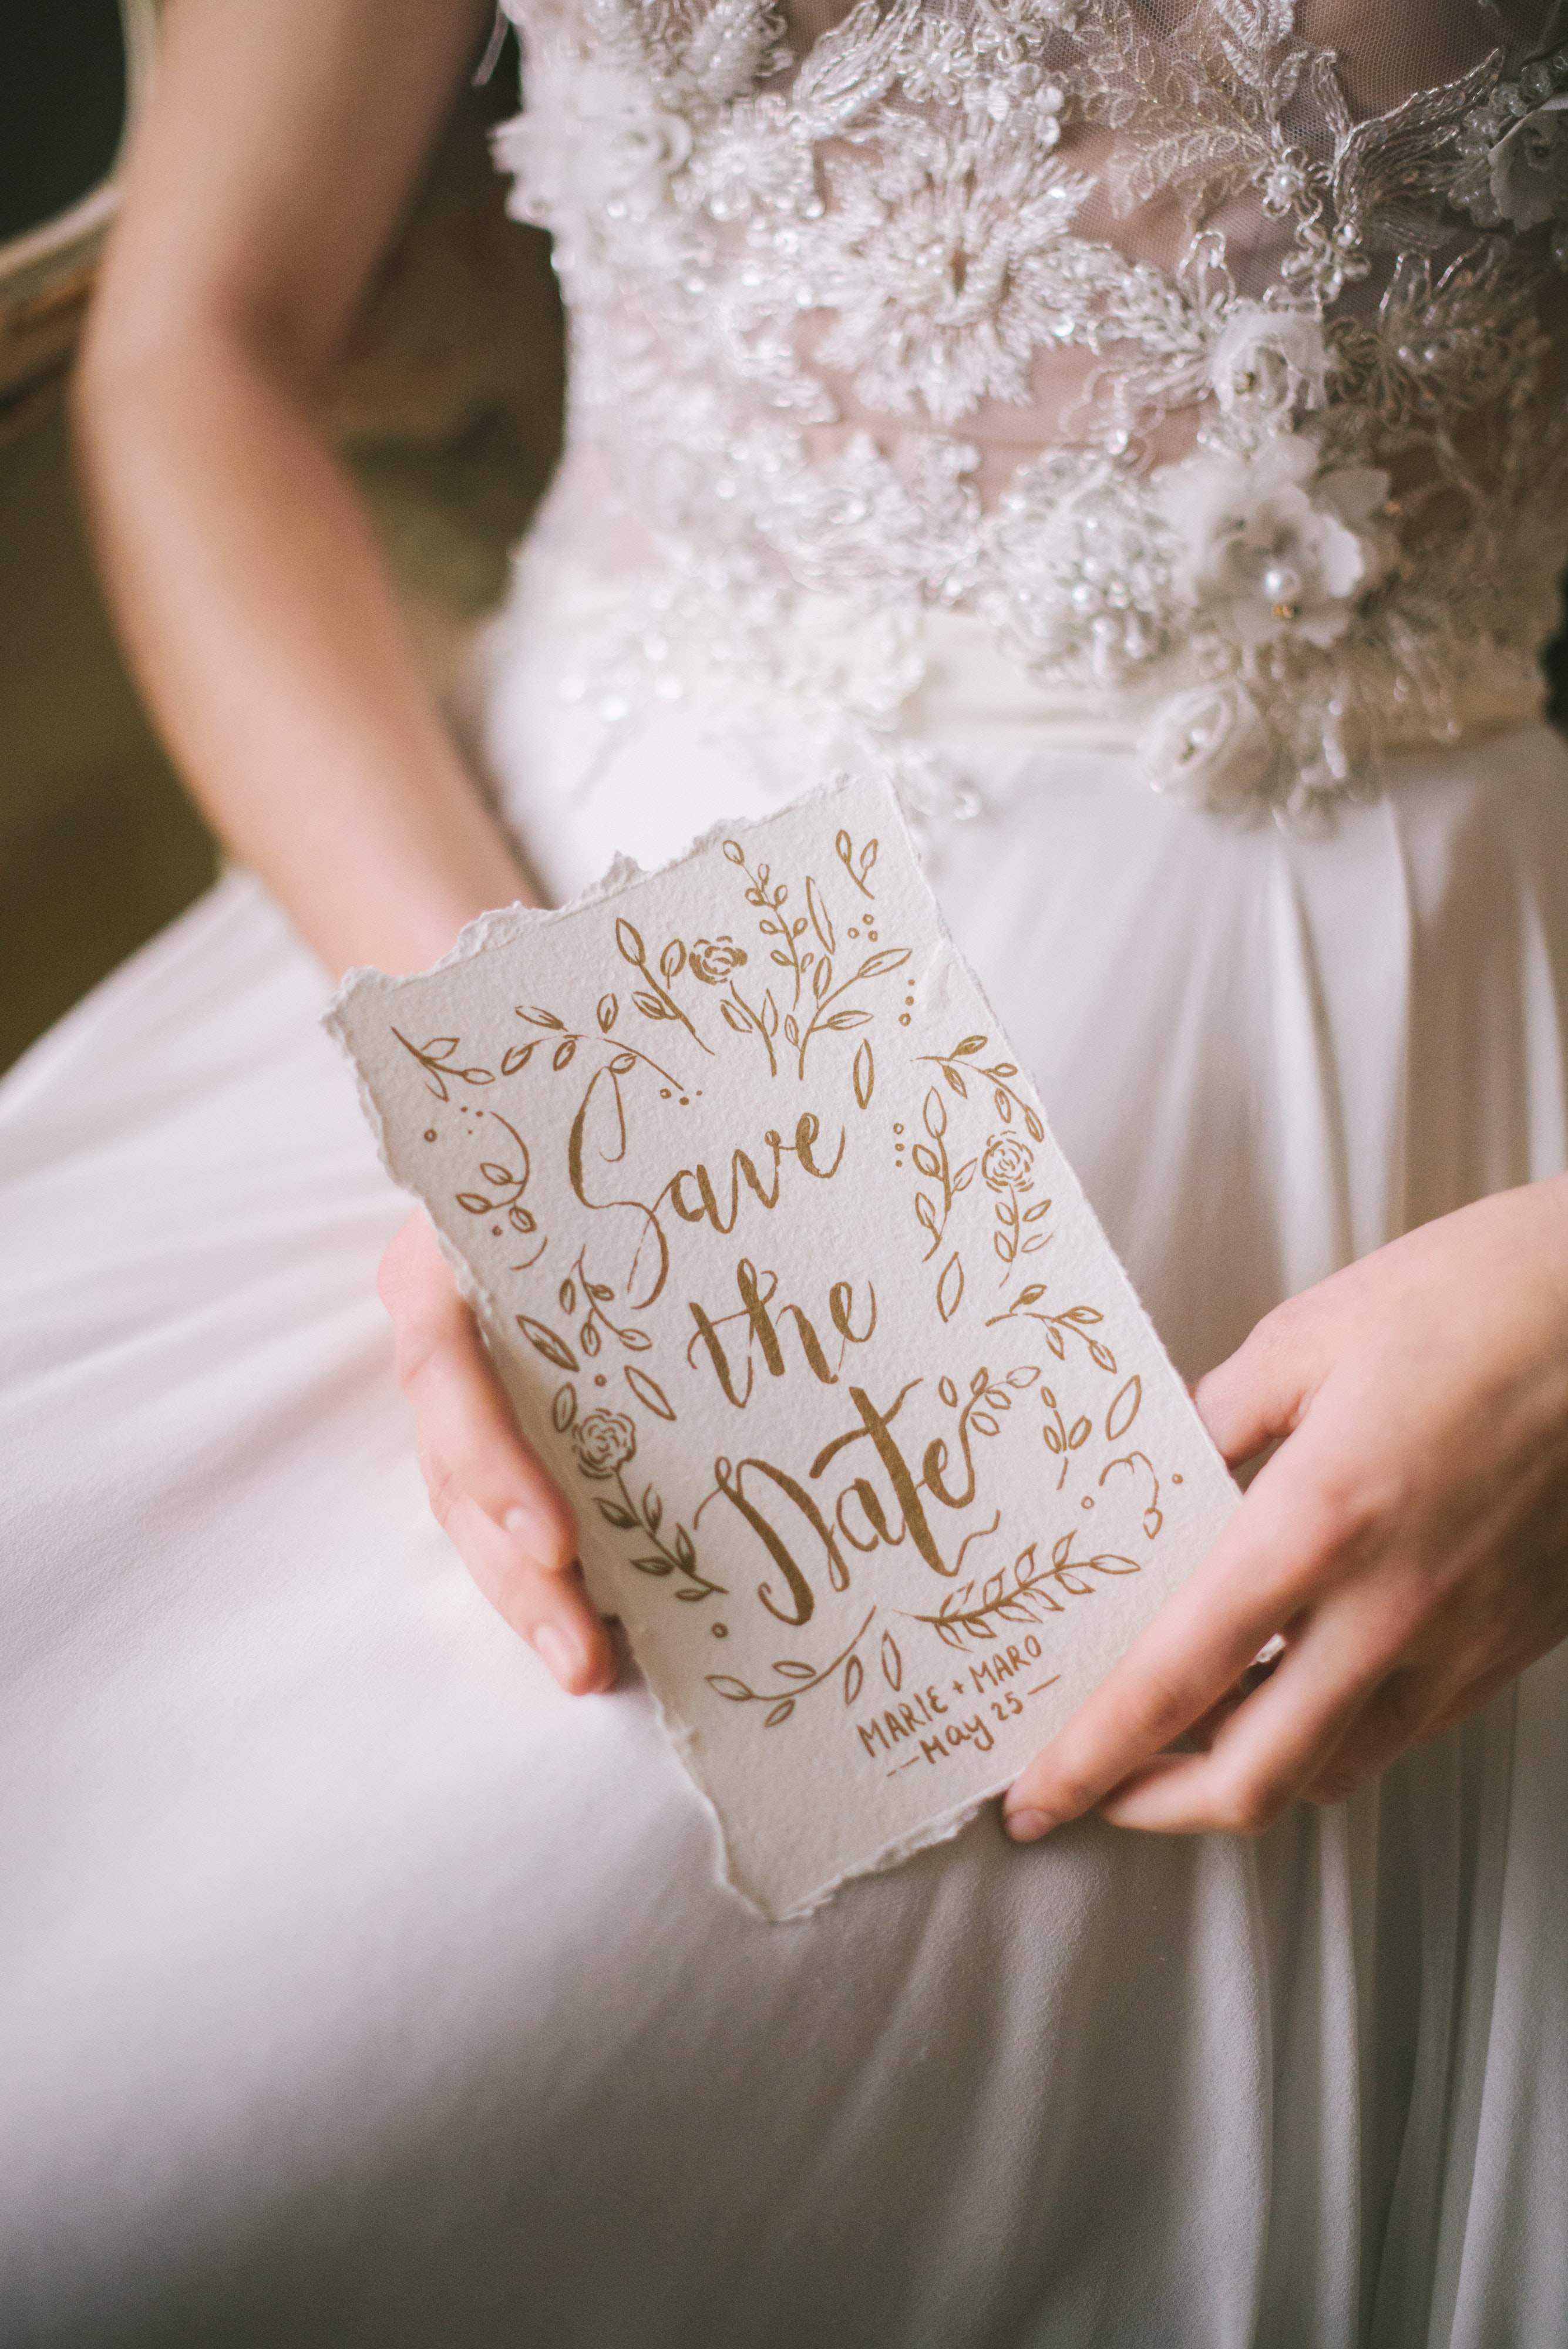 Tipy na originálne svadobné oznámenia, ktorými očaríš svadobných hostí